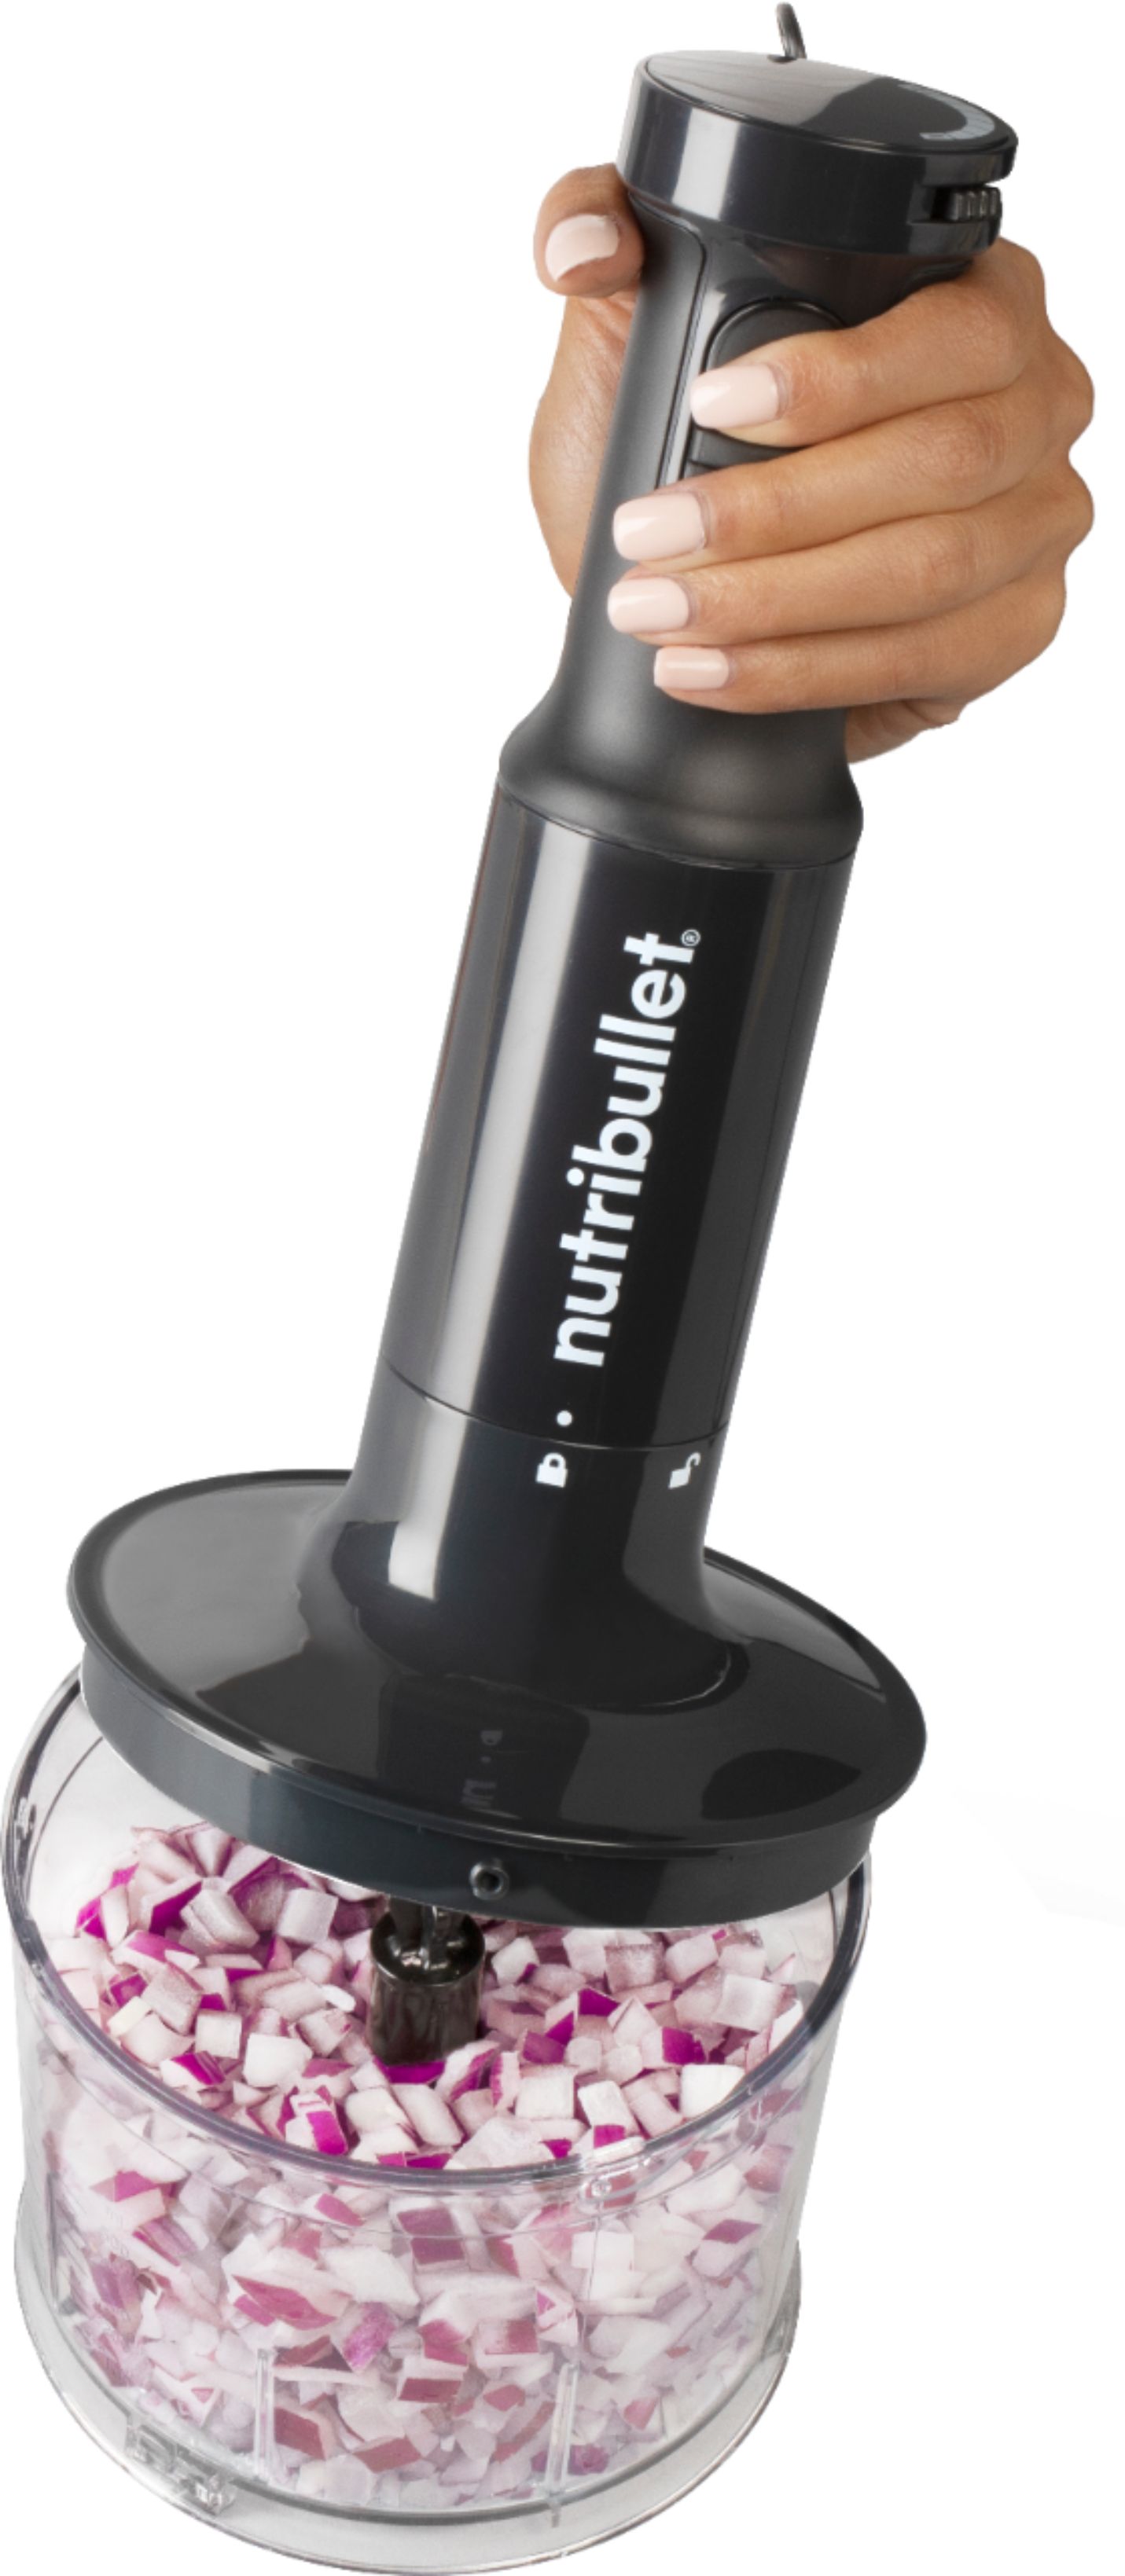 Nutribullet - Immersion Blender Deluxe - Black